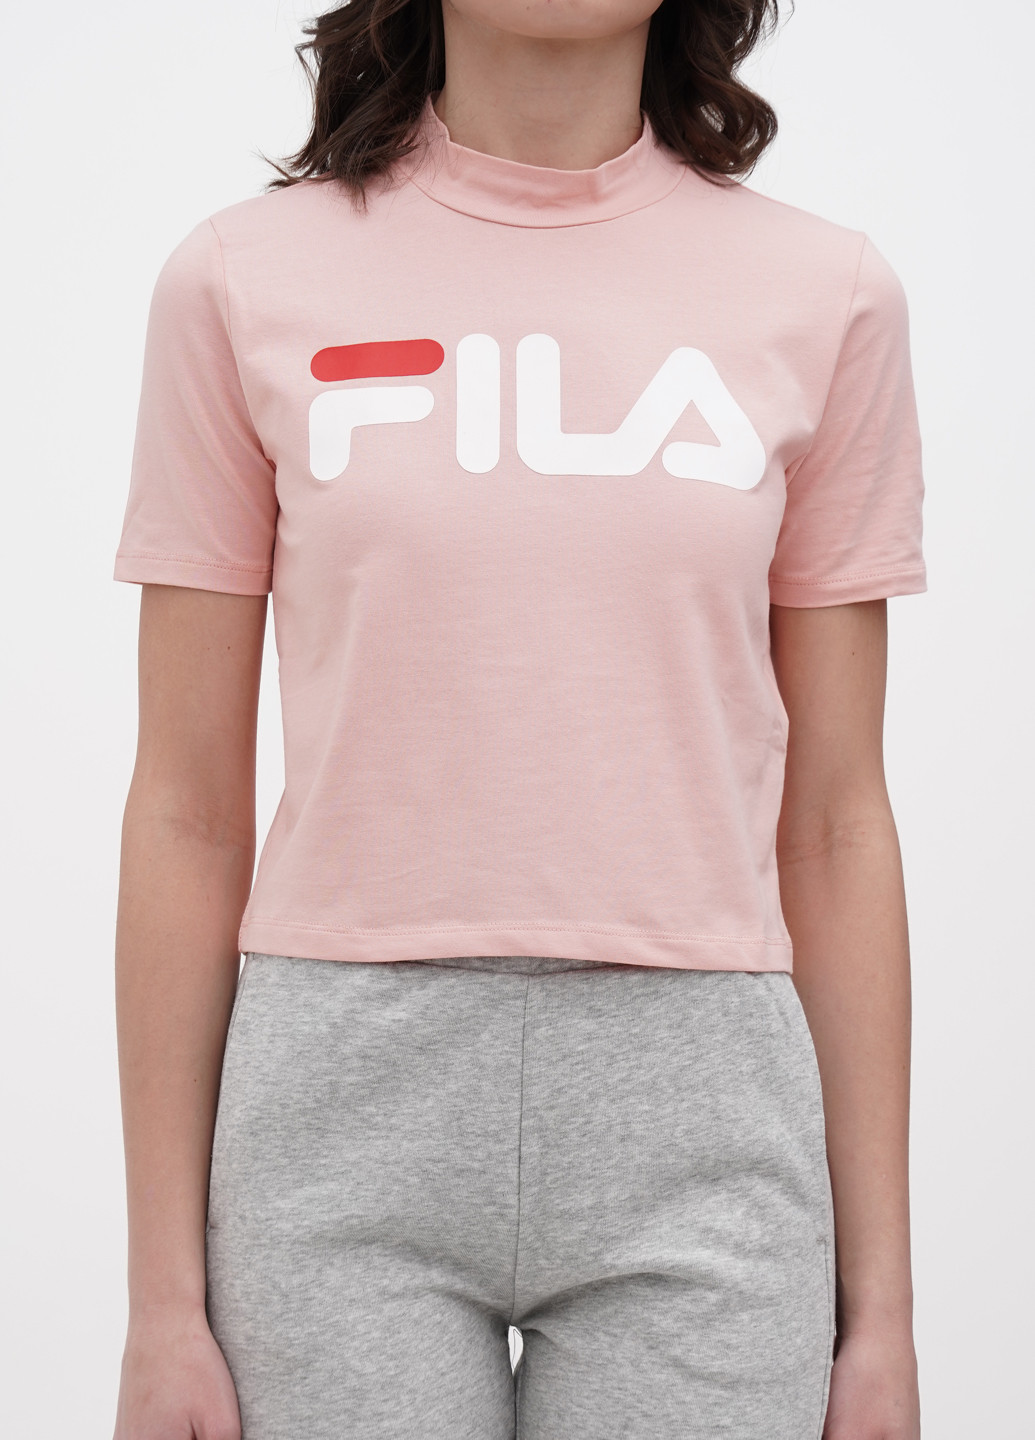 Светло-розовая летняя футболка Fila